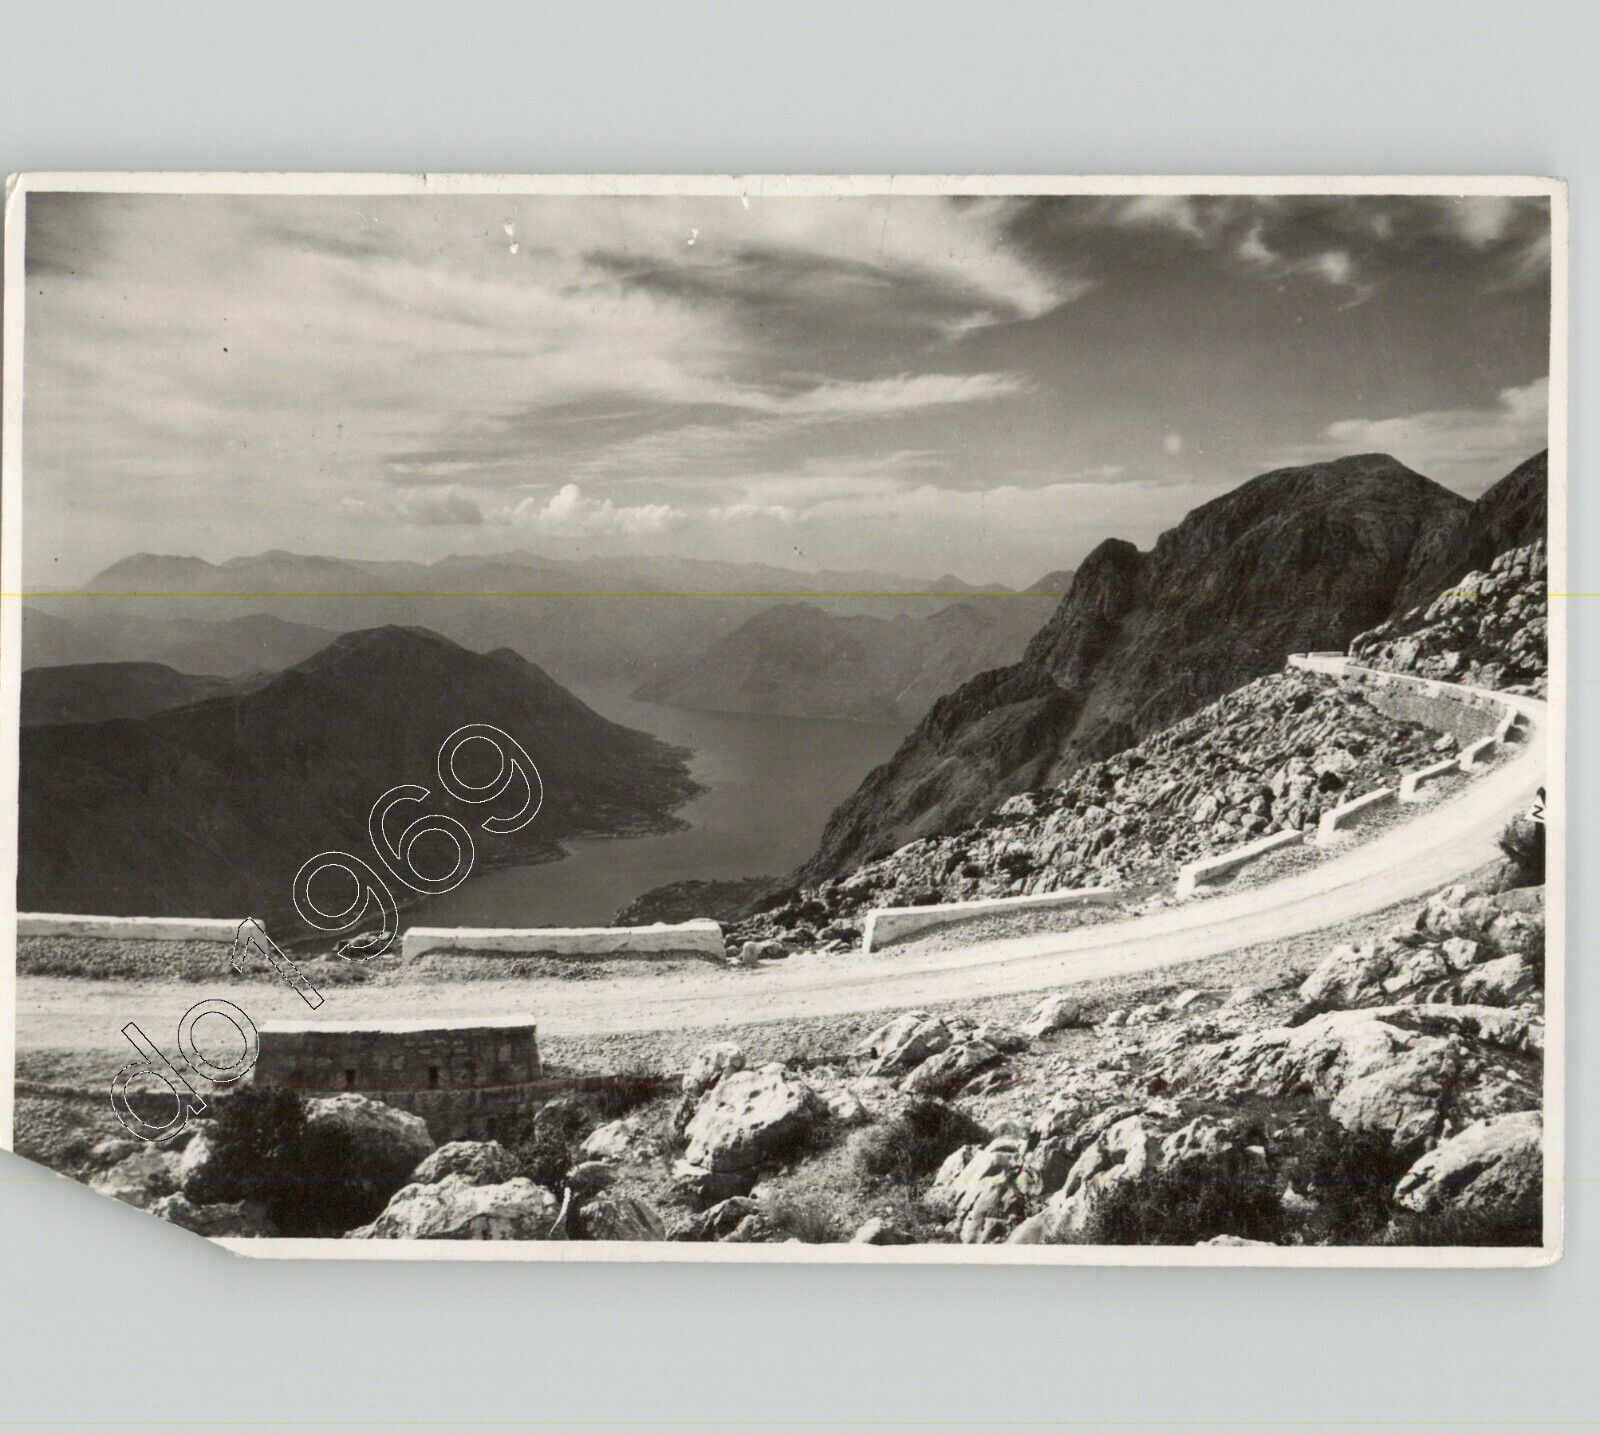 Road from KOTOR to MONTENEGRO Yugoslavia Coastal View 1950s Vtg Press Photo PIX